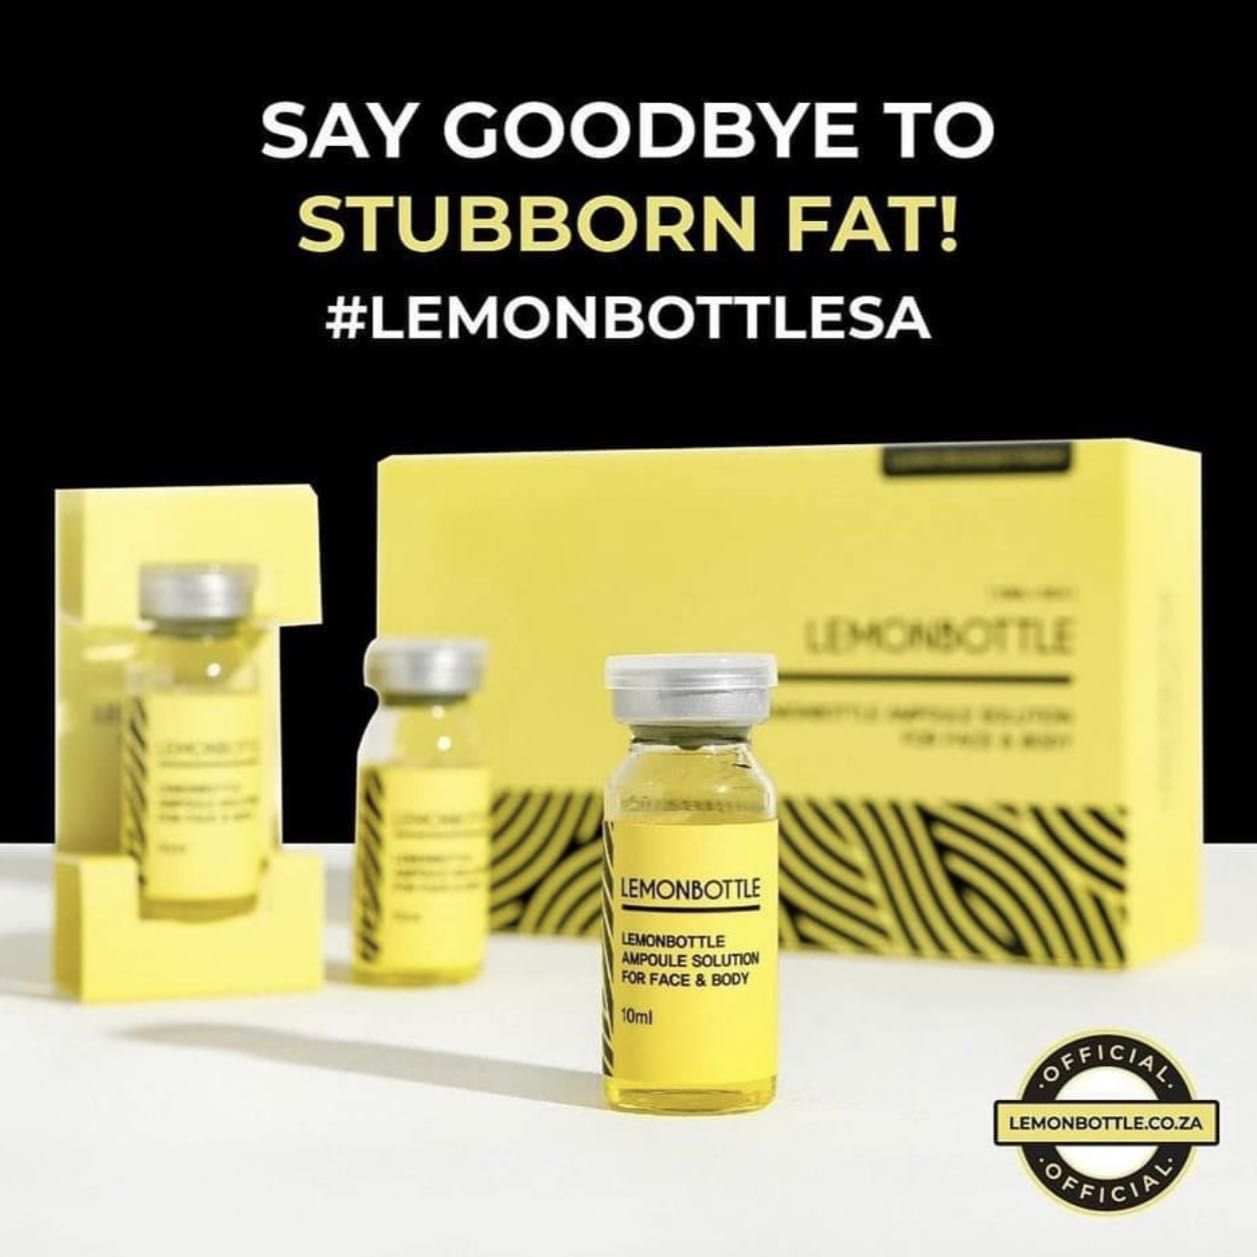 🍋 Lemon Bottle Fat dissolving injections ARMS portfolio